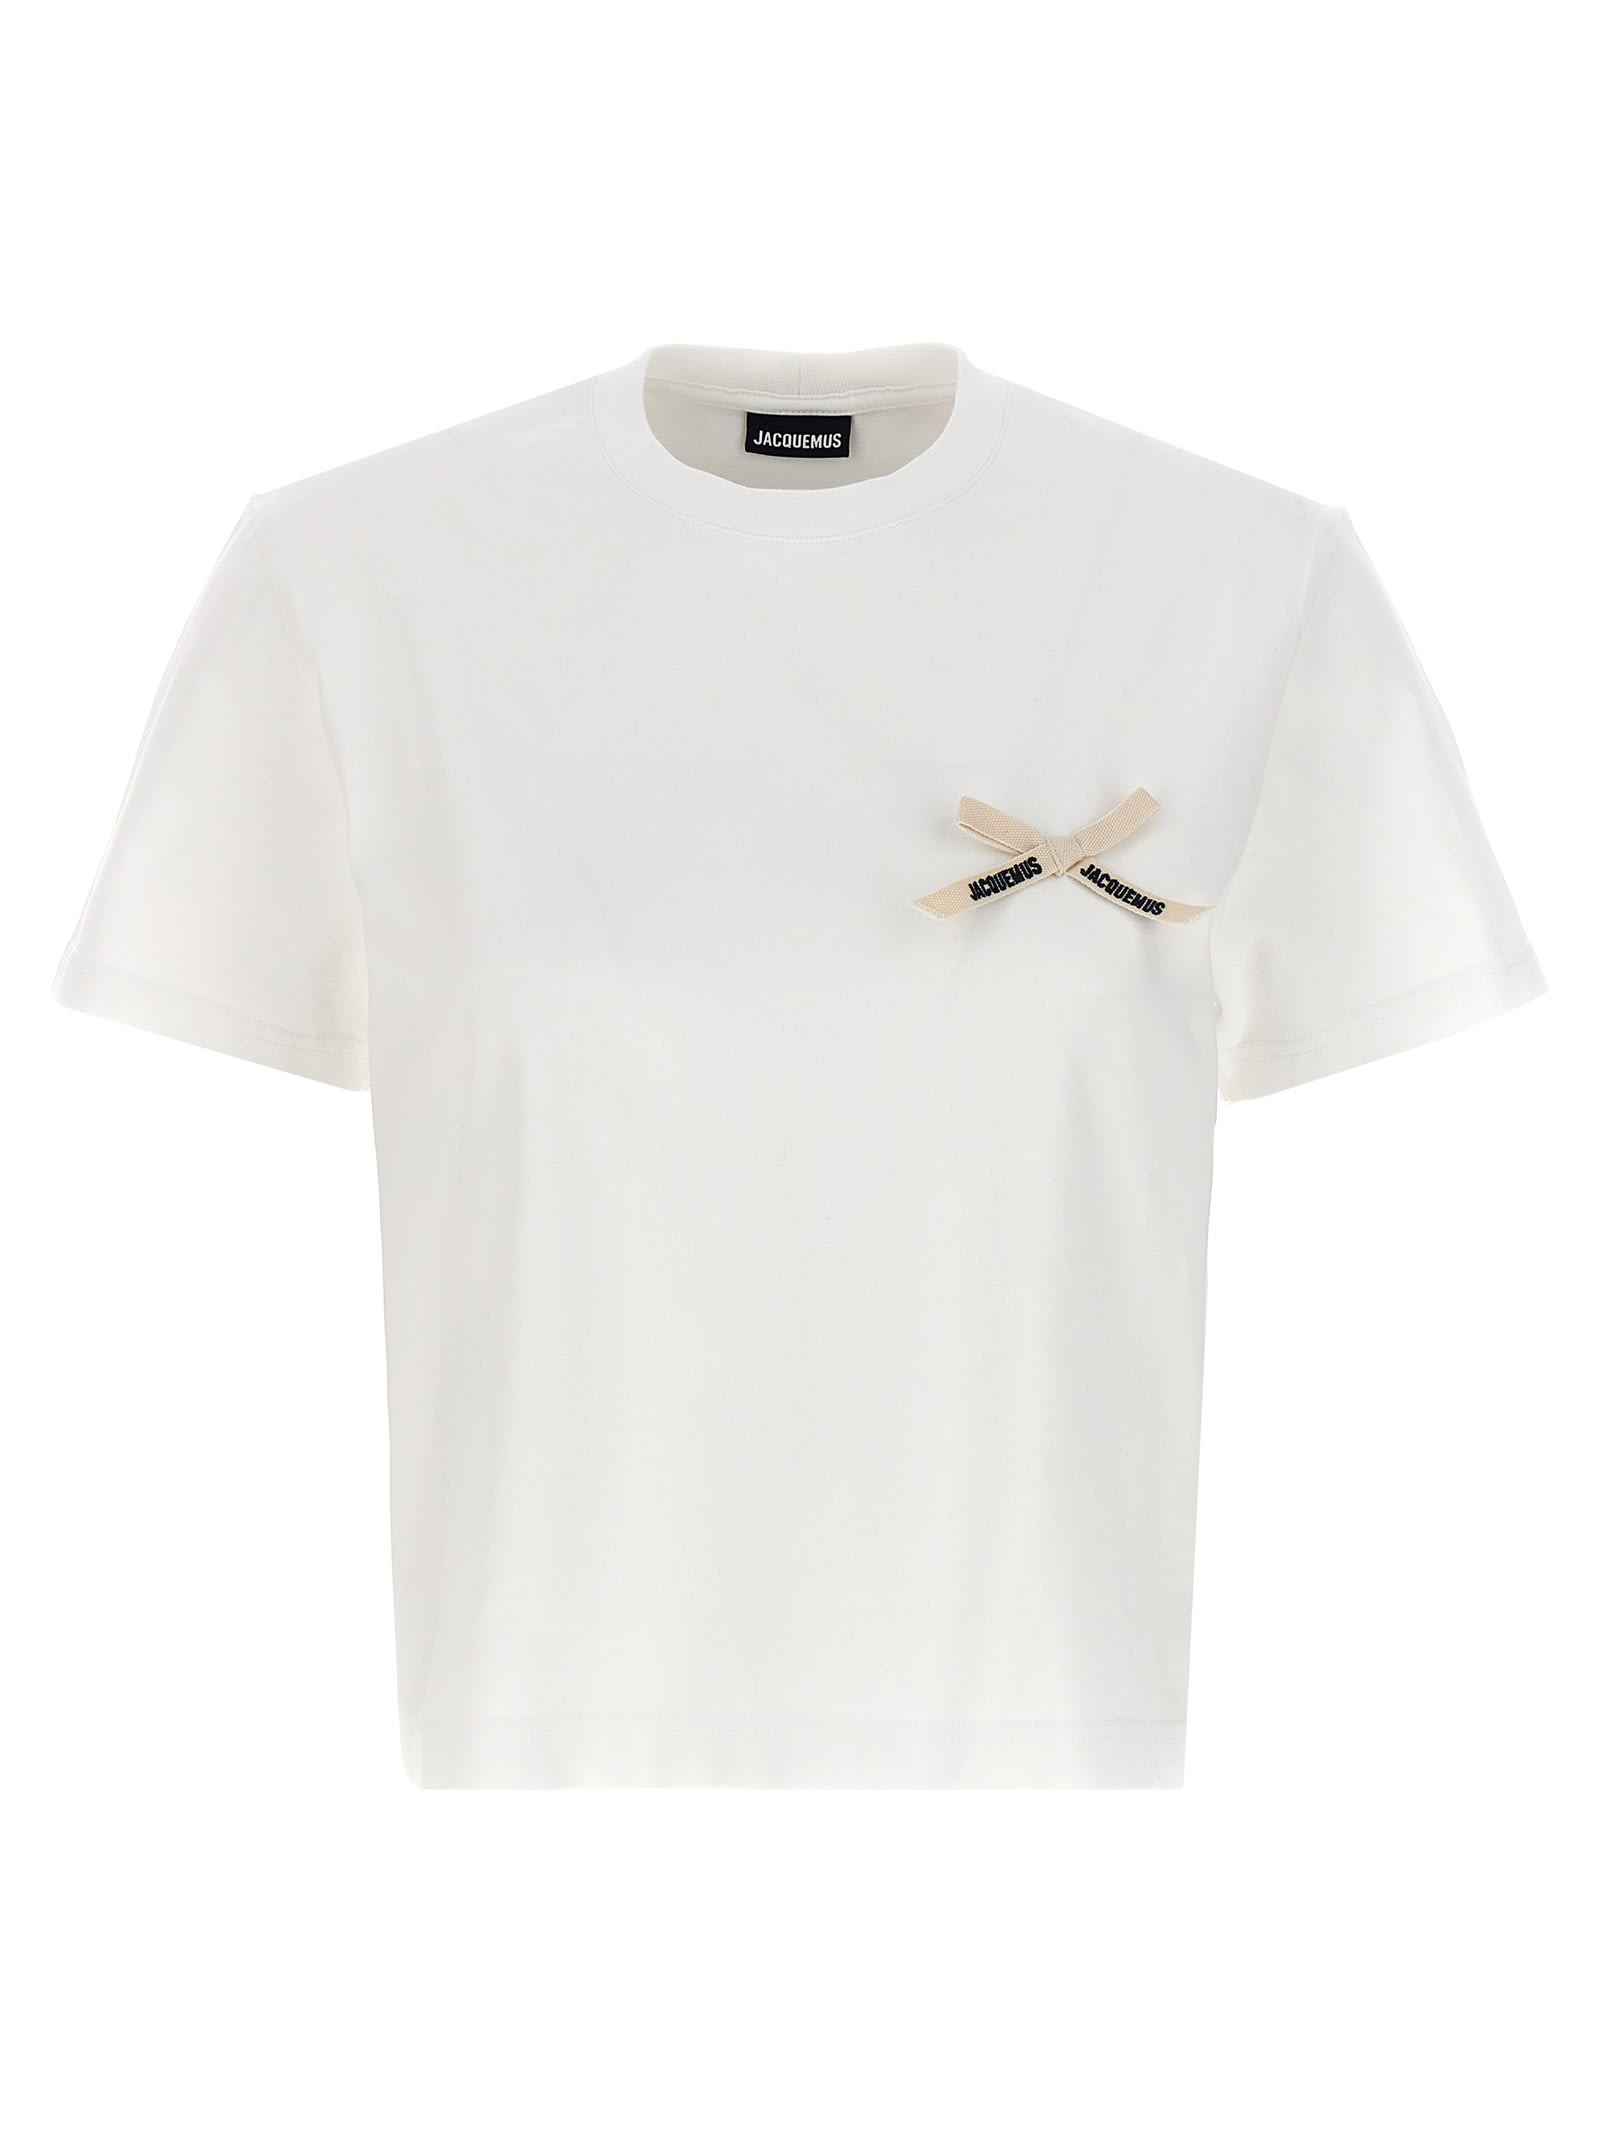 Jacquemus le Tshirt Noeud T-shirt